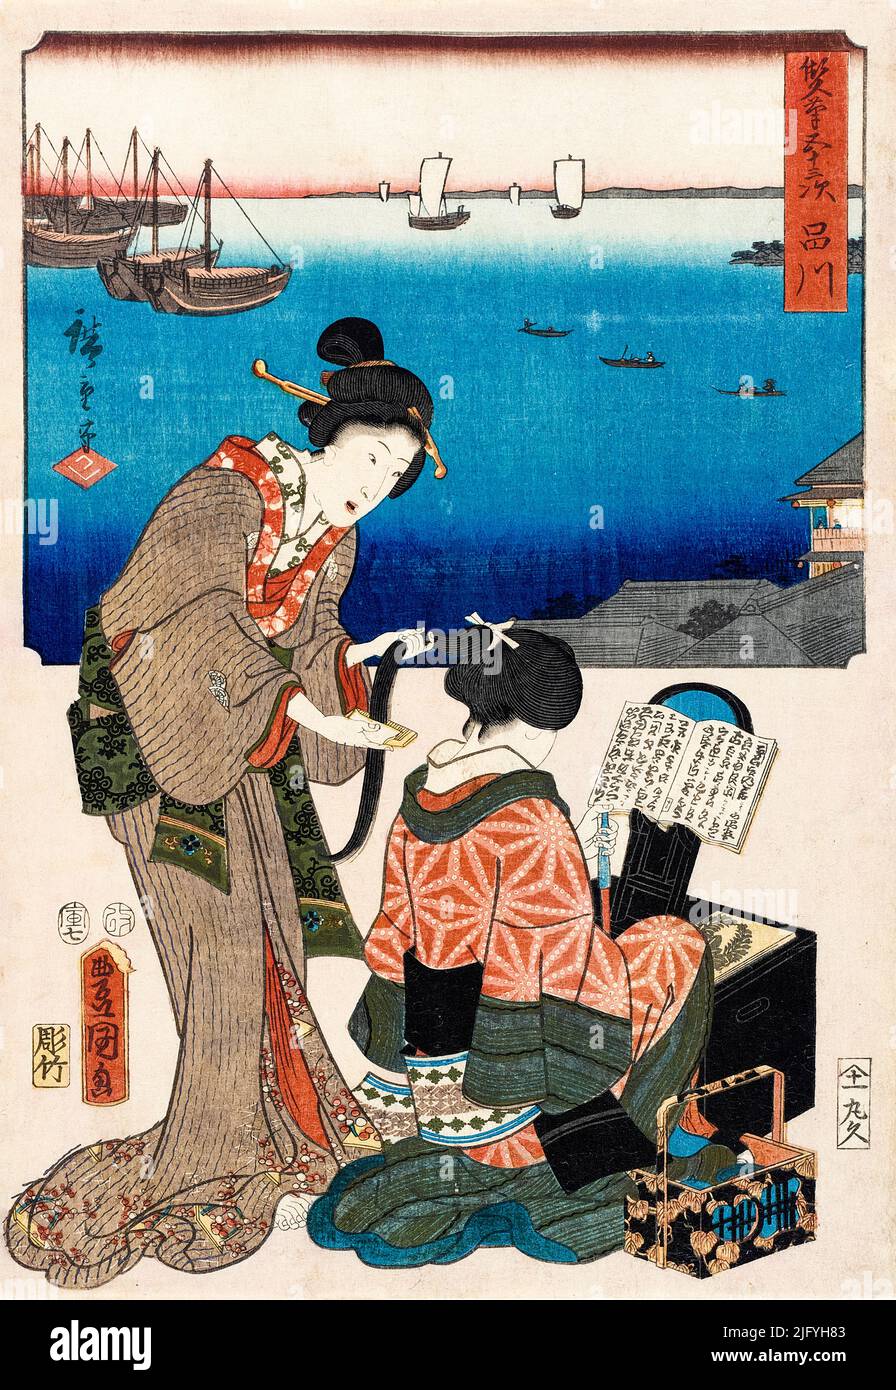 Utagawa Kunisada & Utagawa Hiroshige, Shinagawa, Japanese woodcut print, 1854 Stock Photo